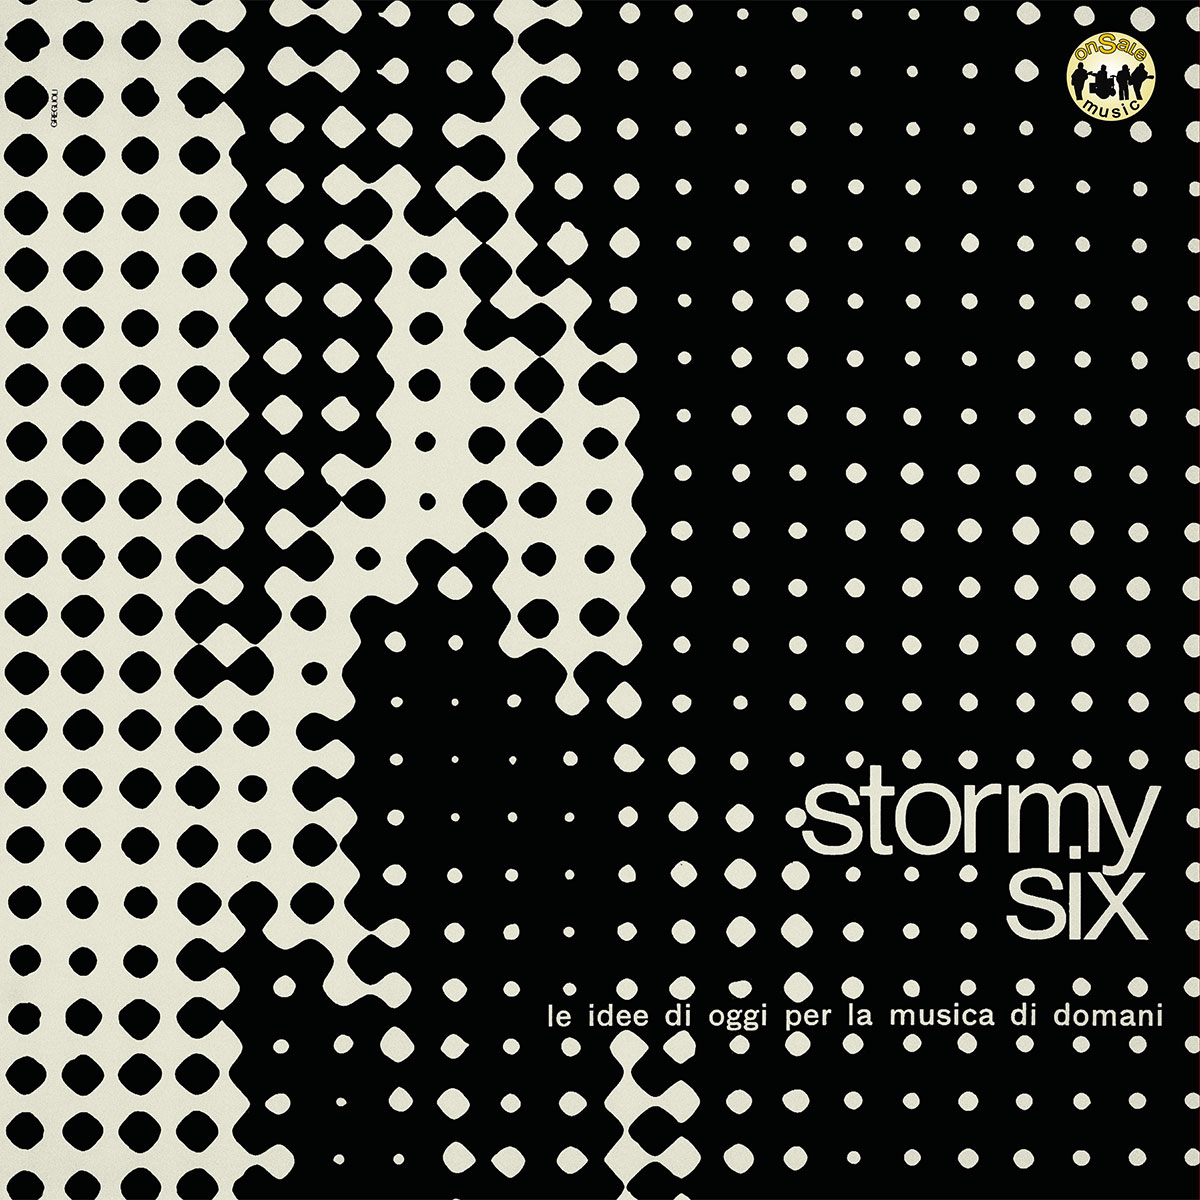 Vinile Stormy Six - Le Idee Di Oggi Per La Musica Di Domani NUOVO SIGILLATO, EDIZIONE DEL 06/05/2021 SUBITO DISPONIBILE